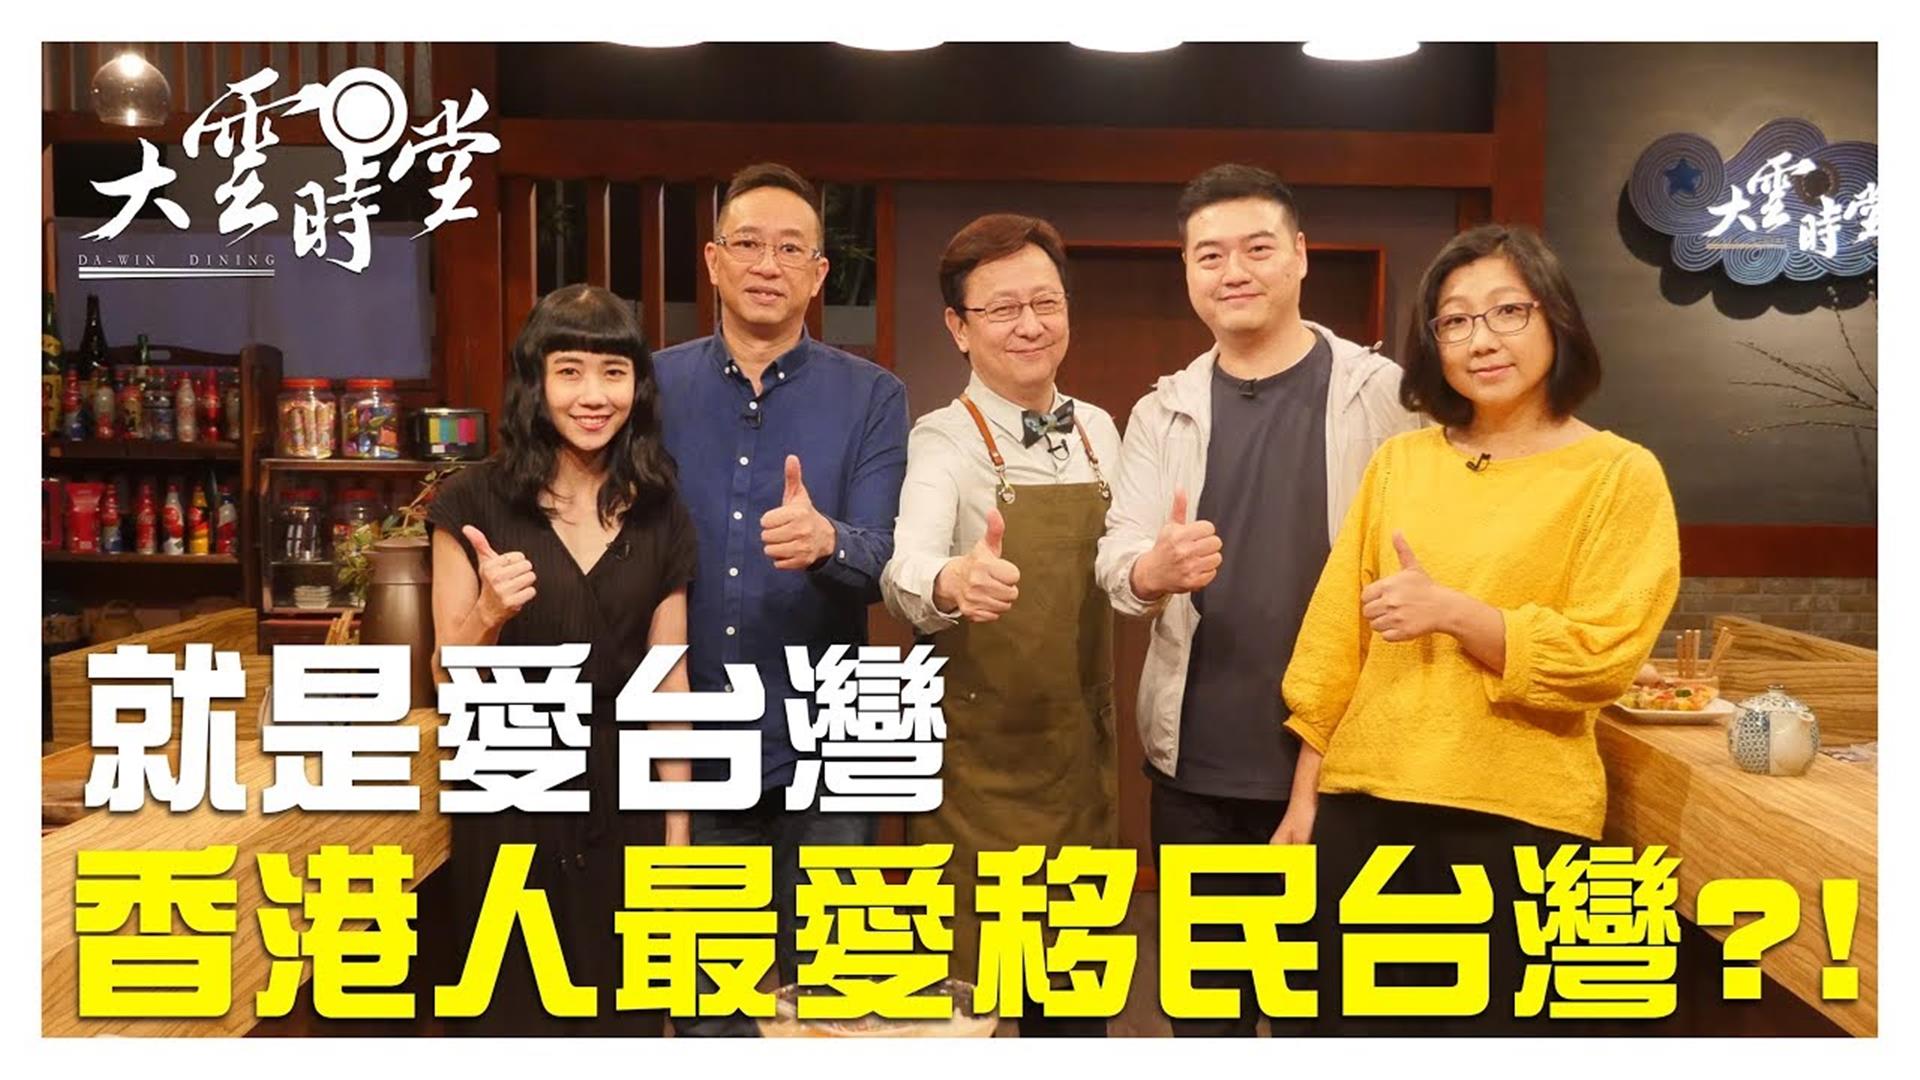 《大雲時堂》就是愛台灣 台灣獲香港人移民首選 20190611